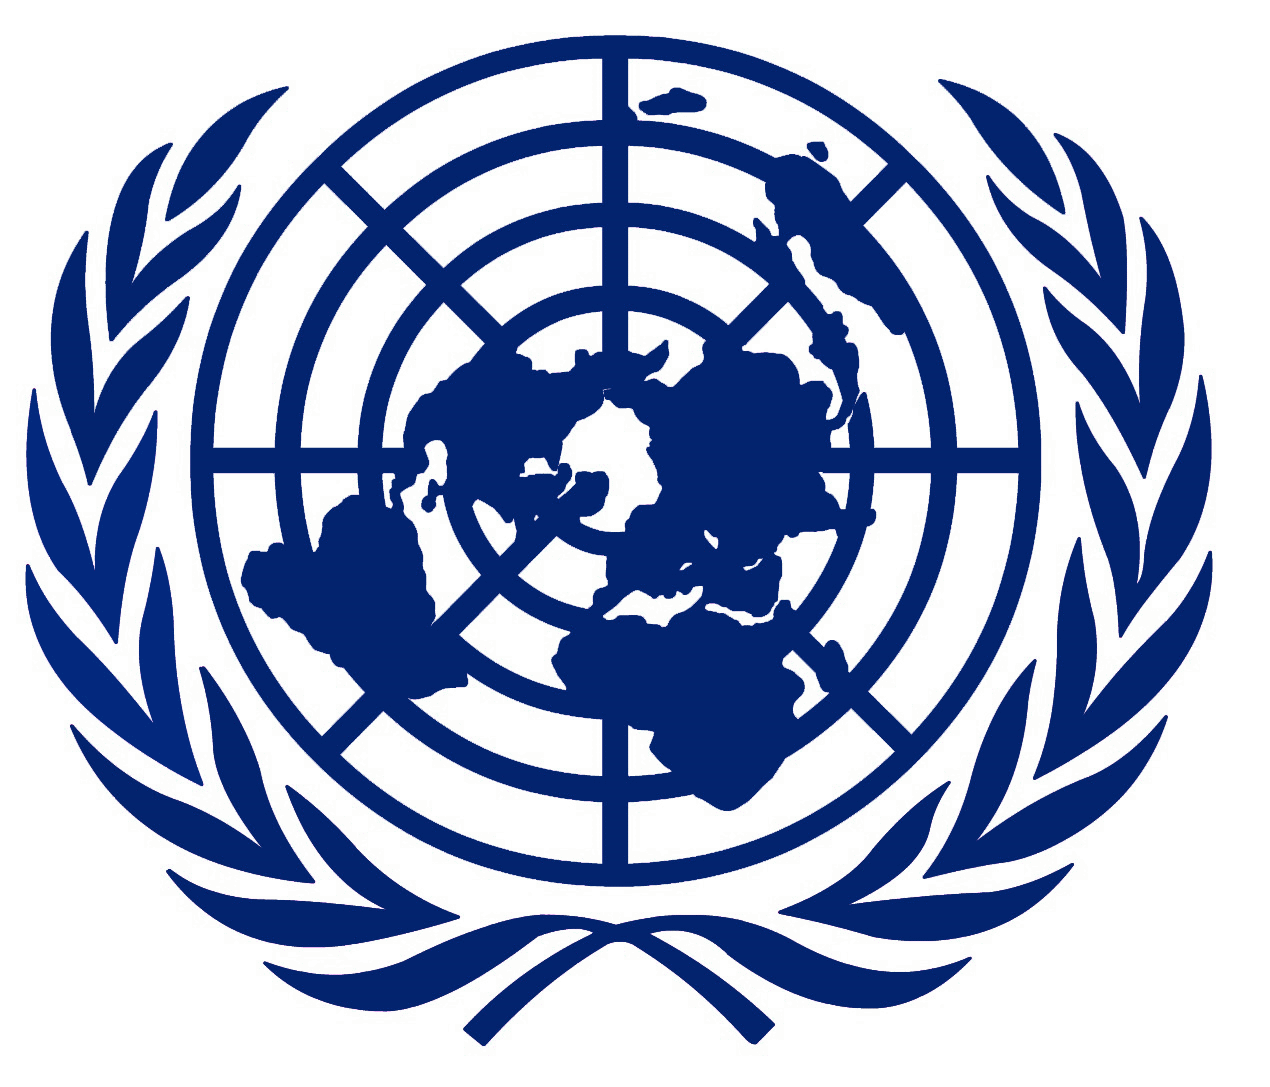 Ркик оон. Всемирная организация ООН лого. Флаг организации Объединенных наций. Совет безопасности ООН логотип. Совет безопасности ООН символ.